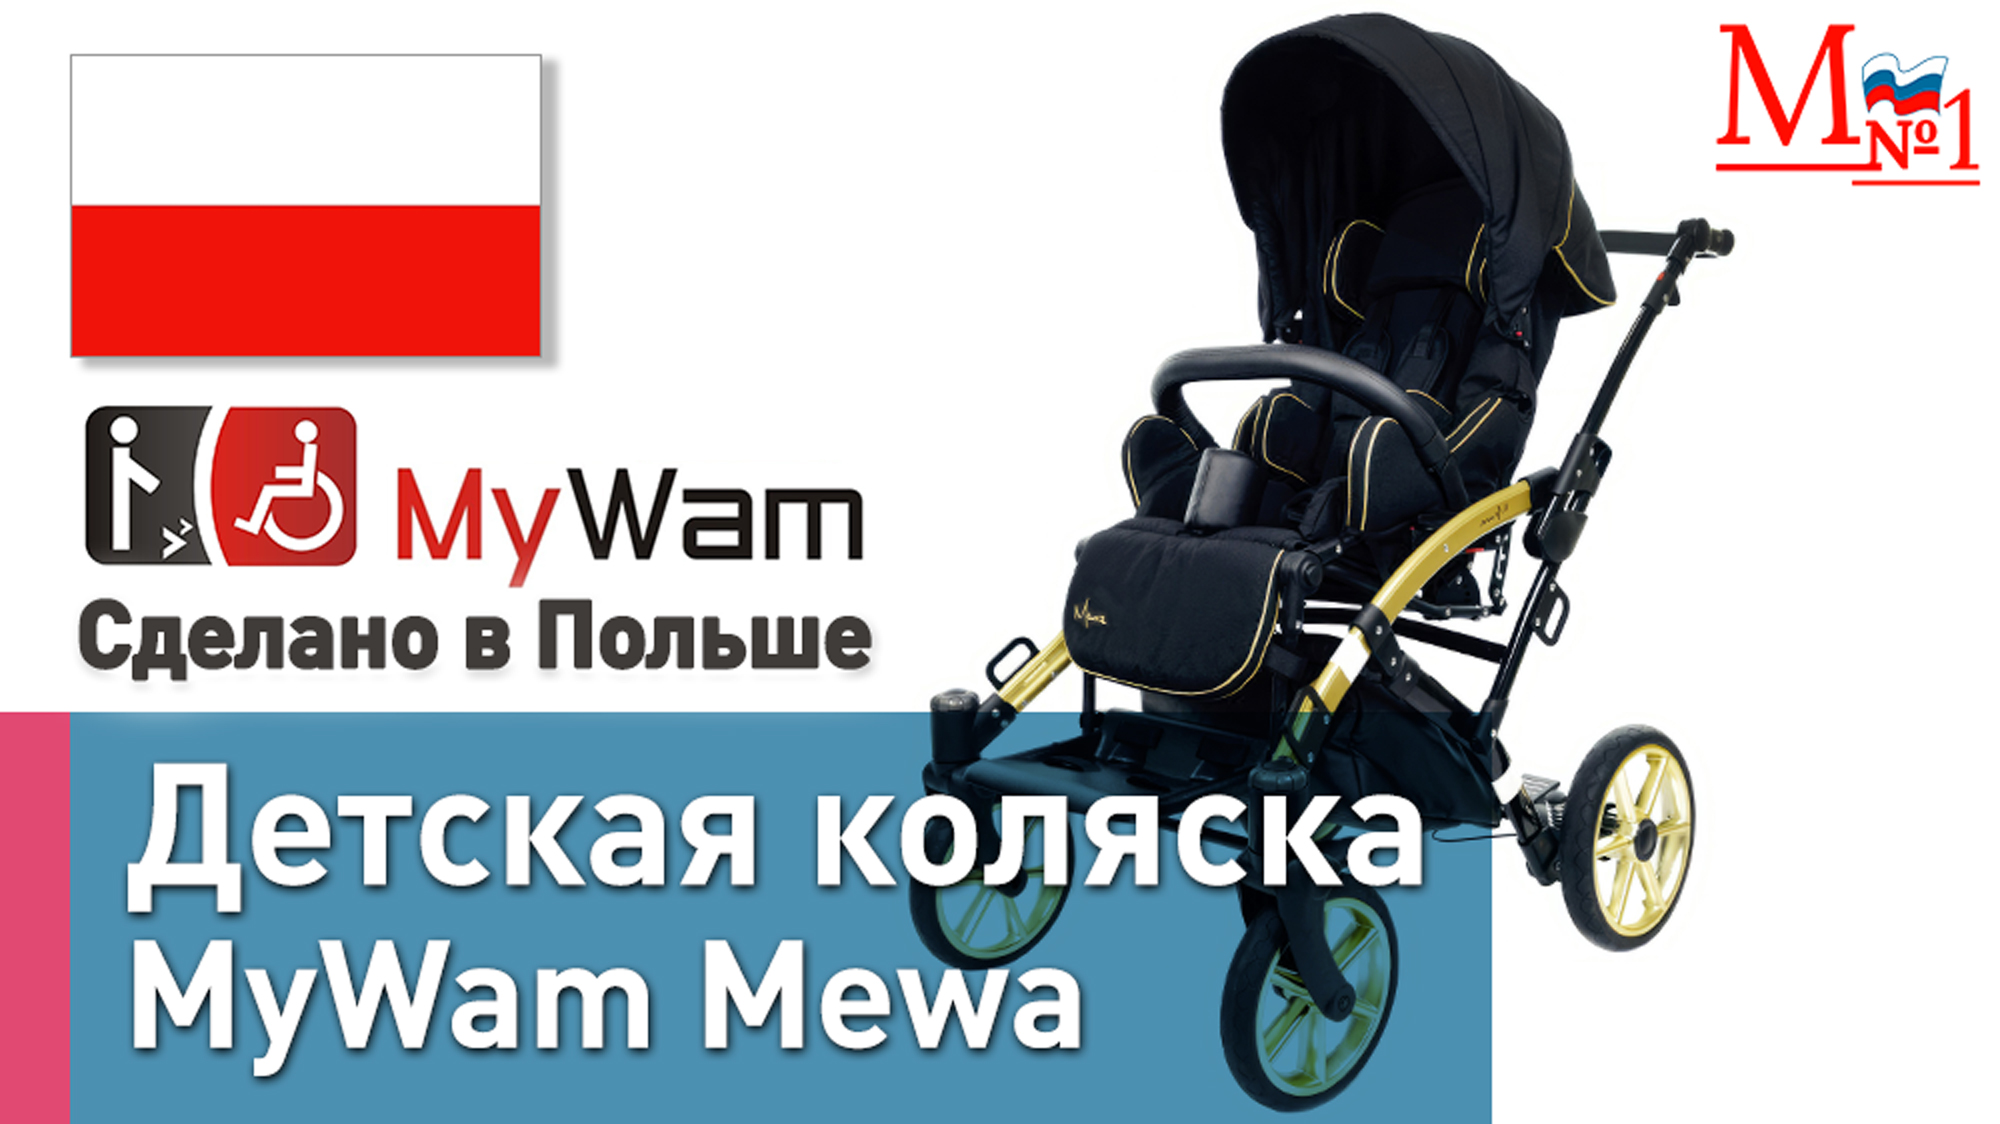 Детская инвалидная коляска MyWam Mewa